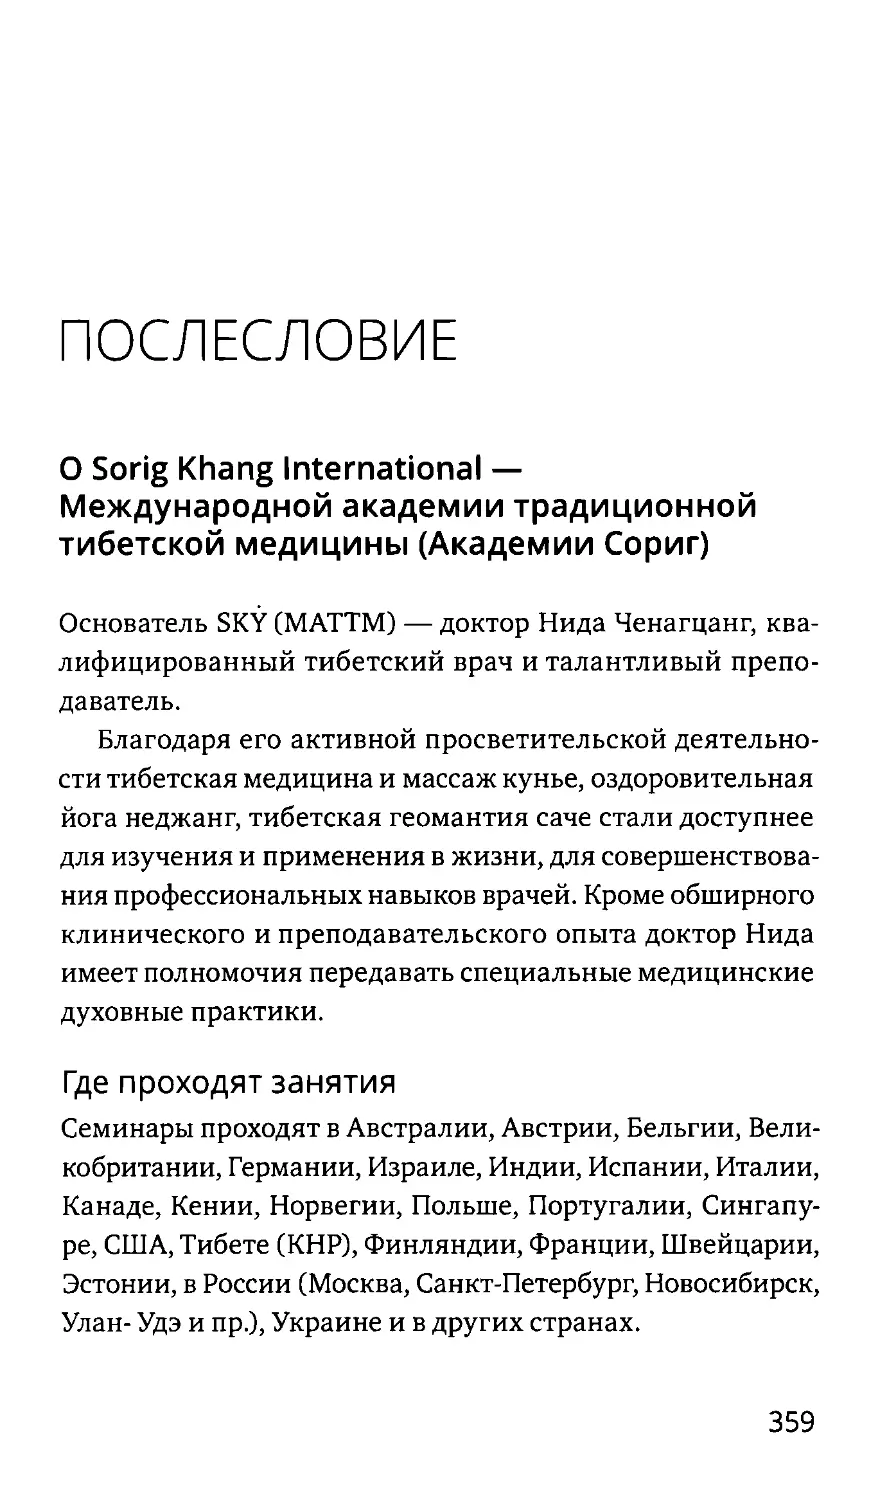 Послесловие
О Sorig Khang International — Международной академии традиционной тибетской медицины (Академии Сориг)